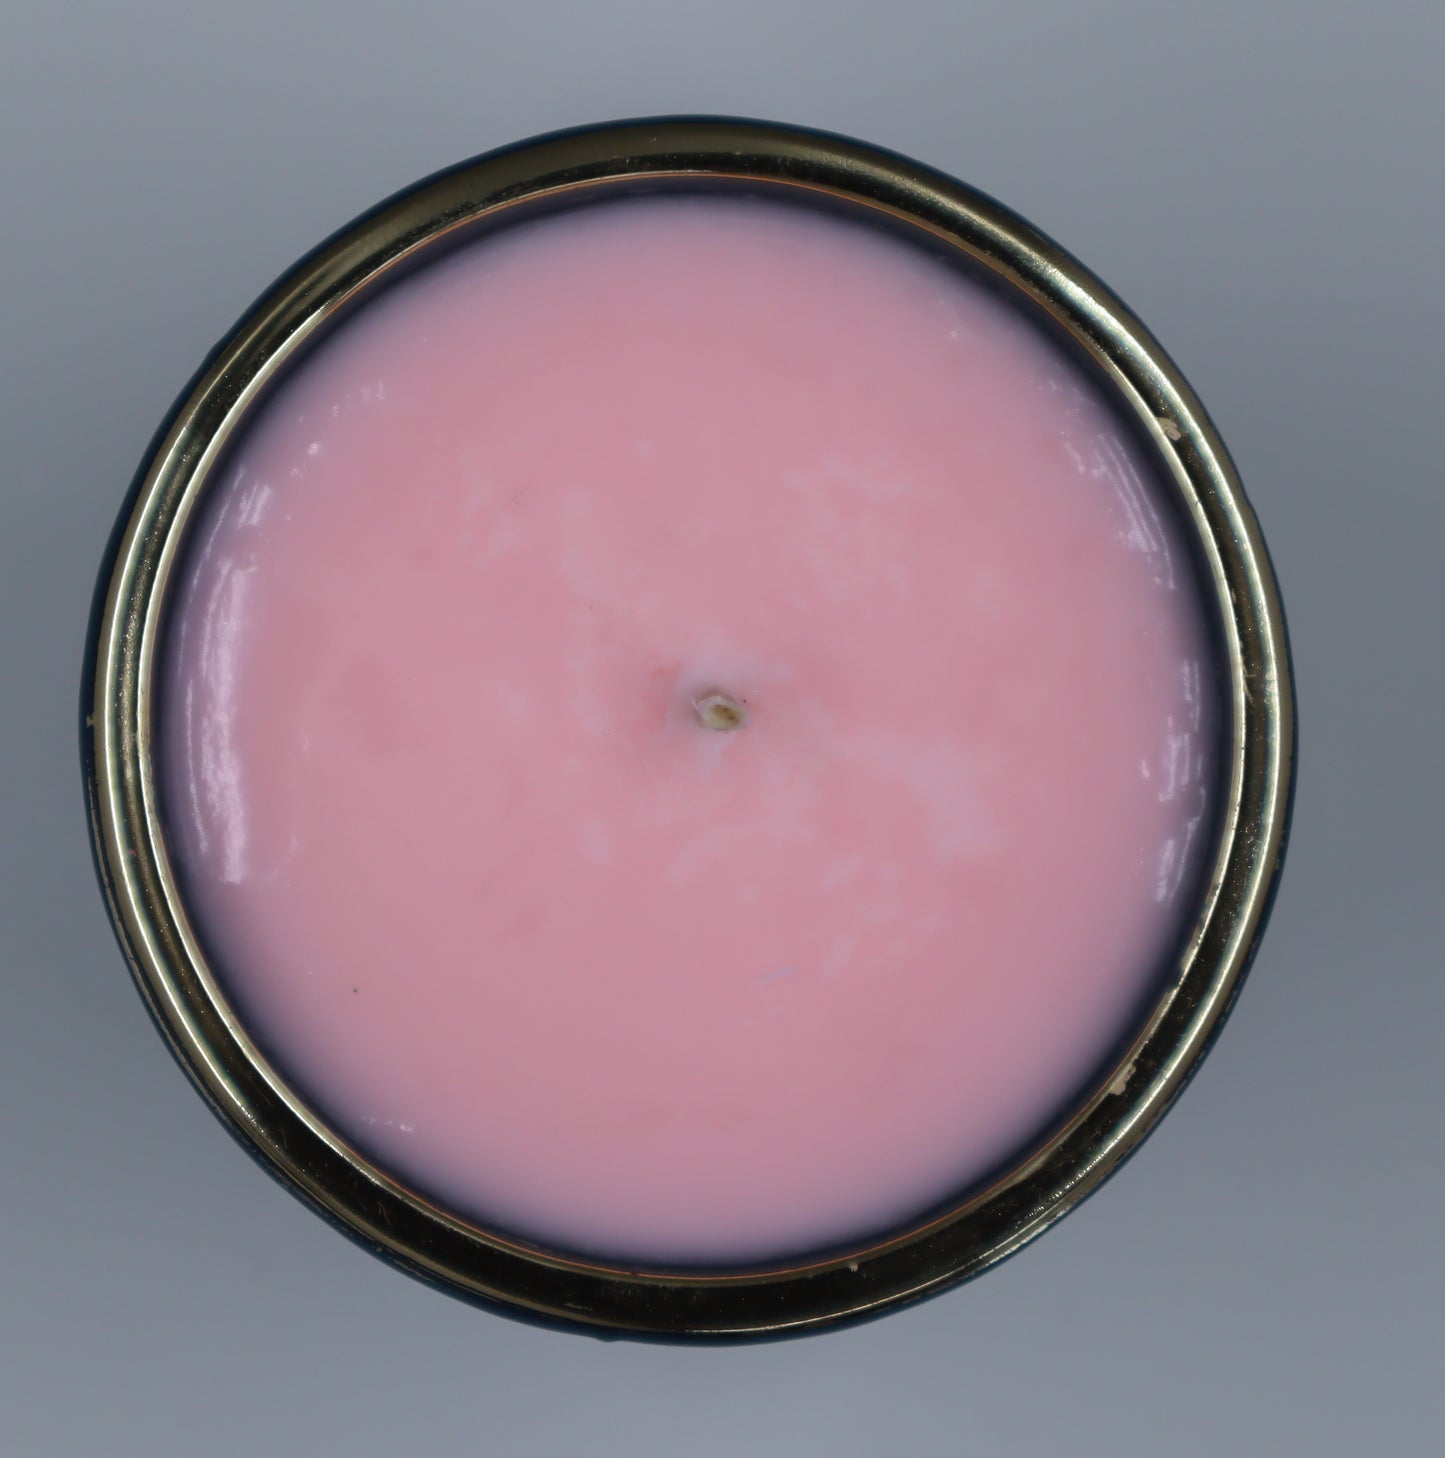 Toasted Marshmallow - Medium soy candle